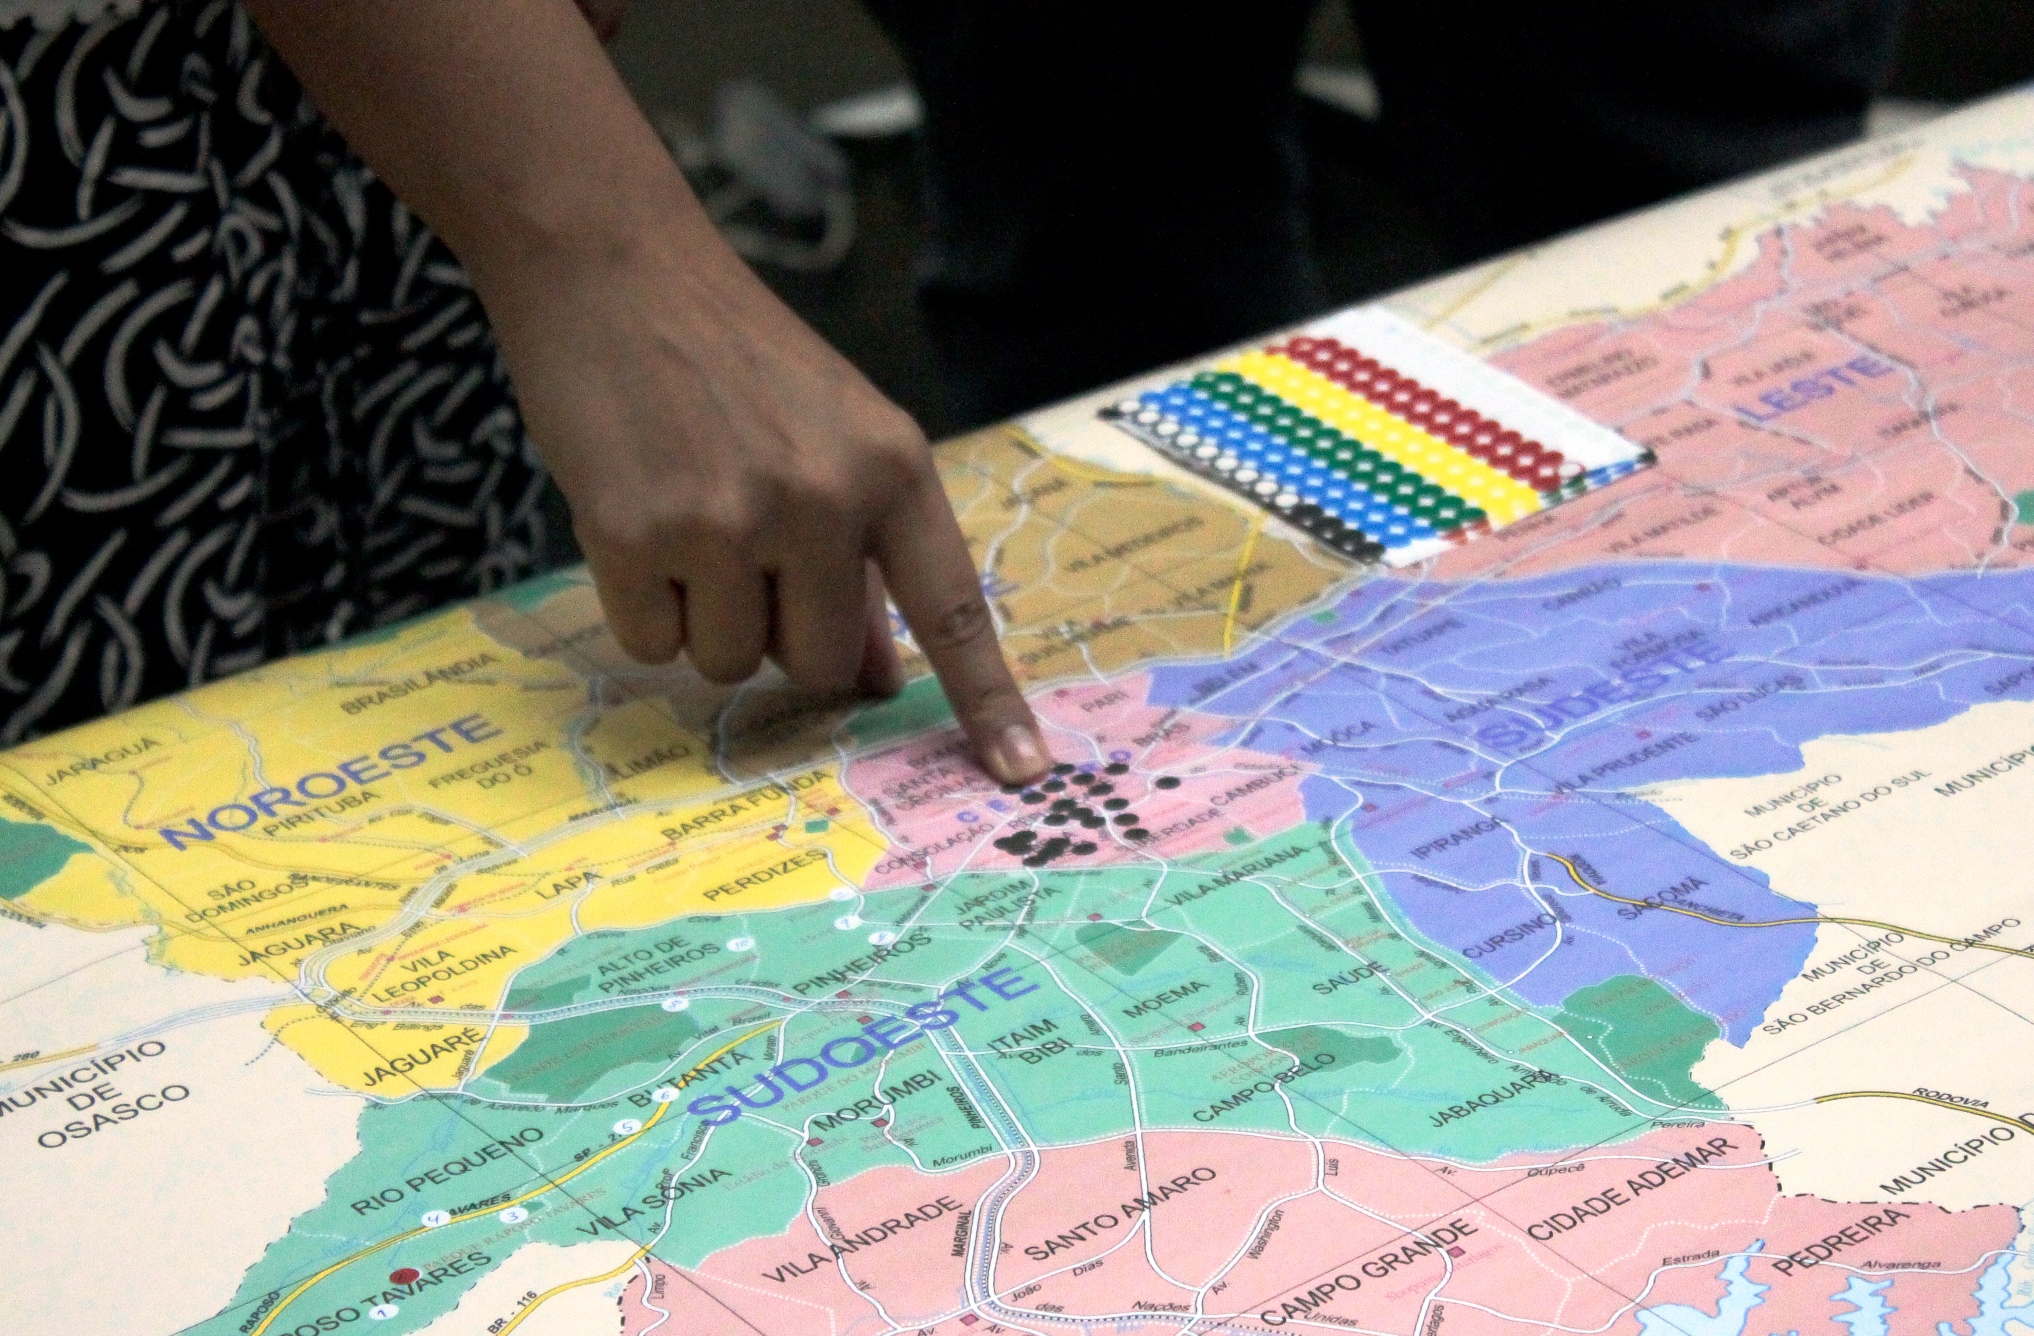 Mapear os pontos de resistência negra é um dos trabalhos do coletivo Crônicas Urbanas